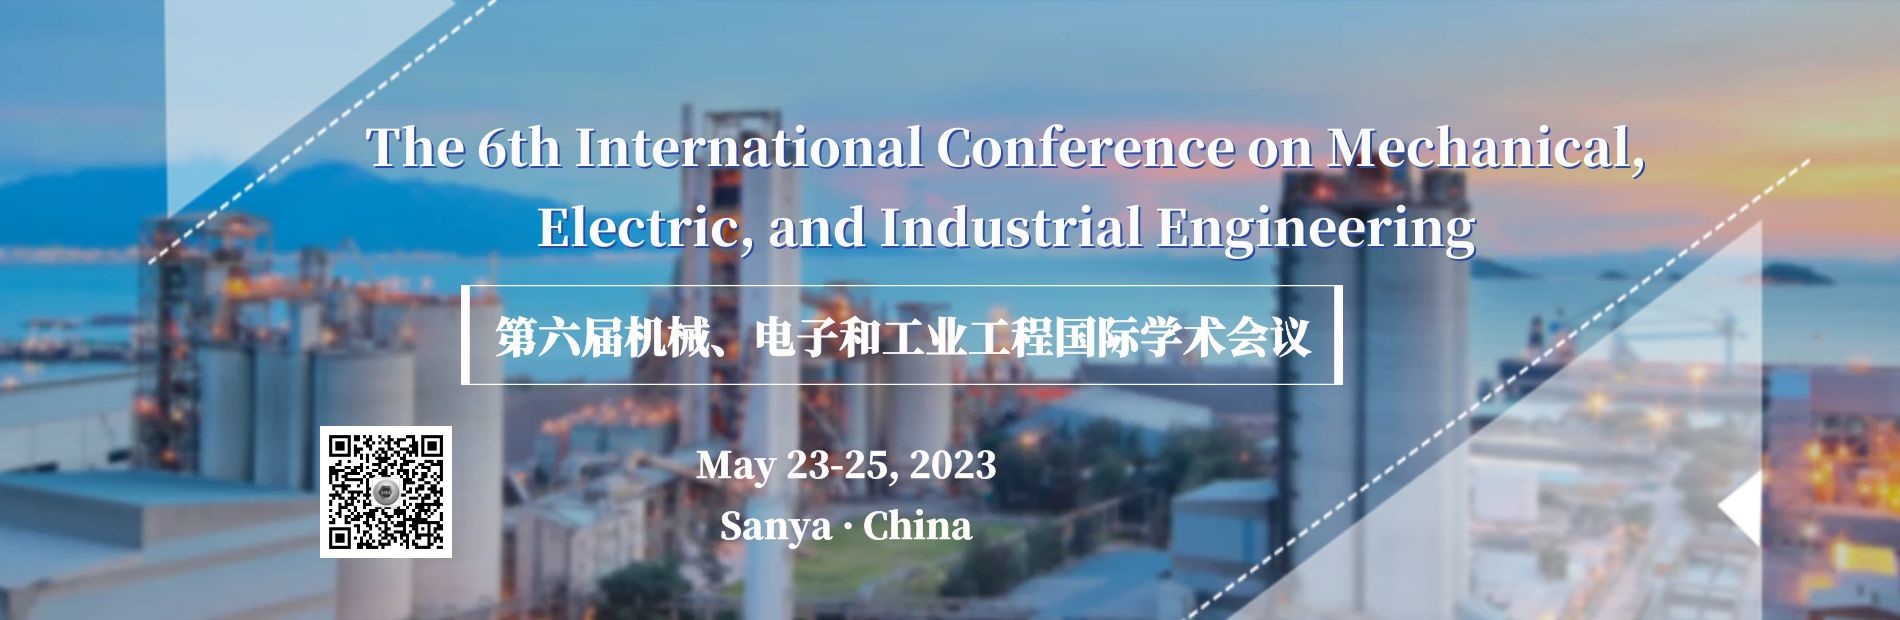 机械、电子和工业工程国际学术会议